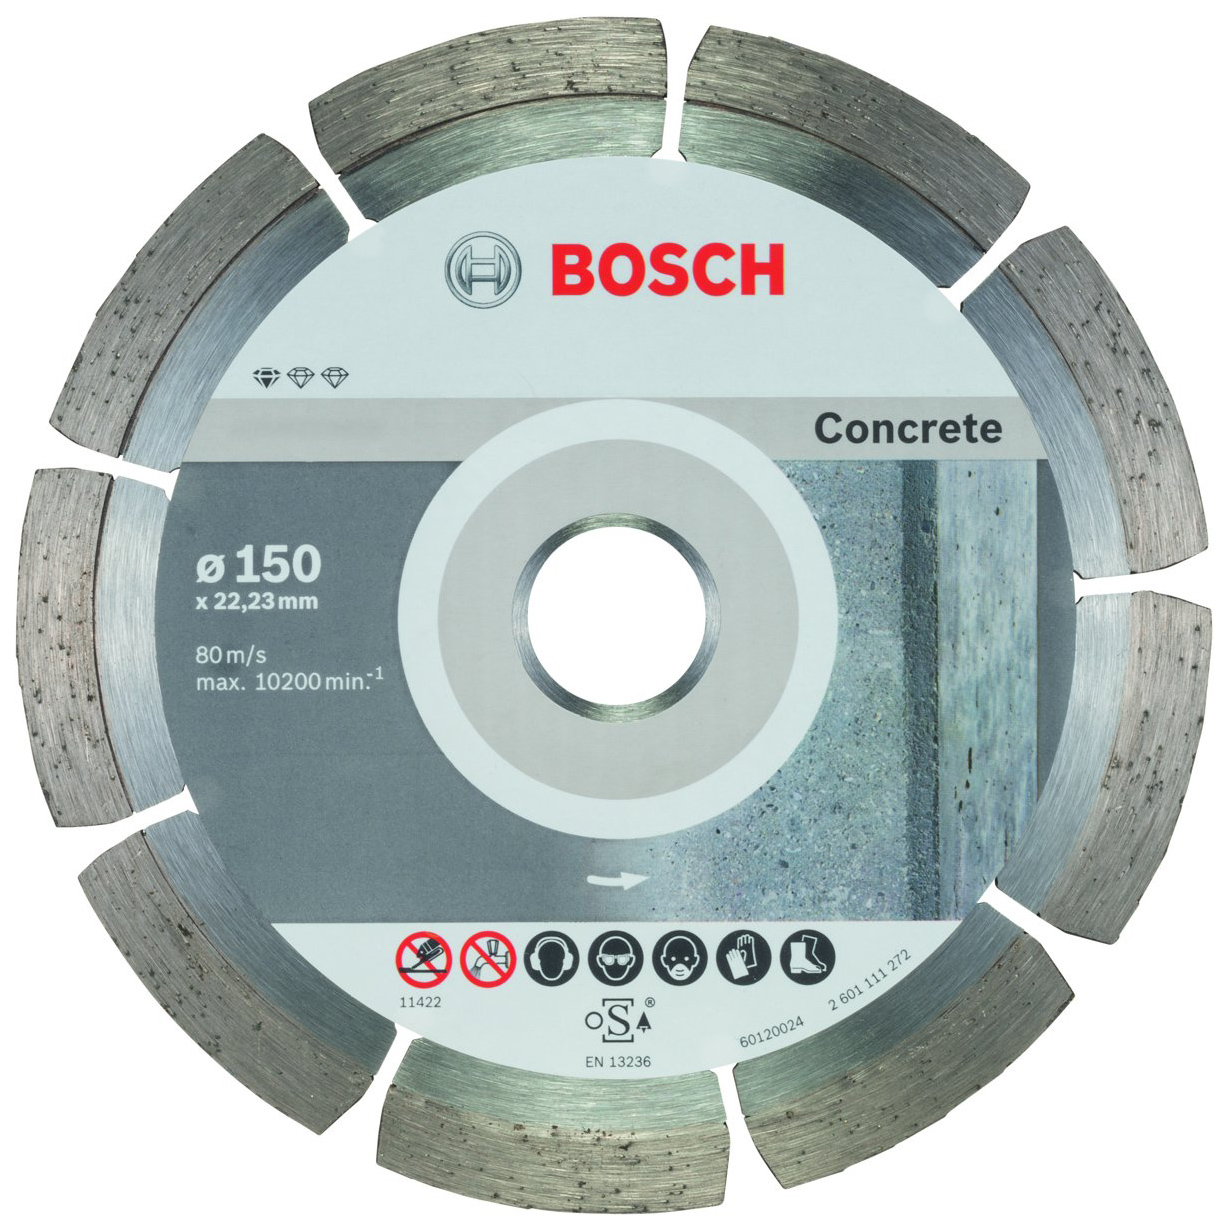 Диск отрезной алмазный Bosch Stnd Concrete 10 шт 150мм 2608603241 диск отрезной алмазный bosch stf concrete 350 25 4 2608603806